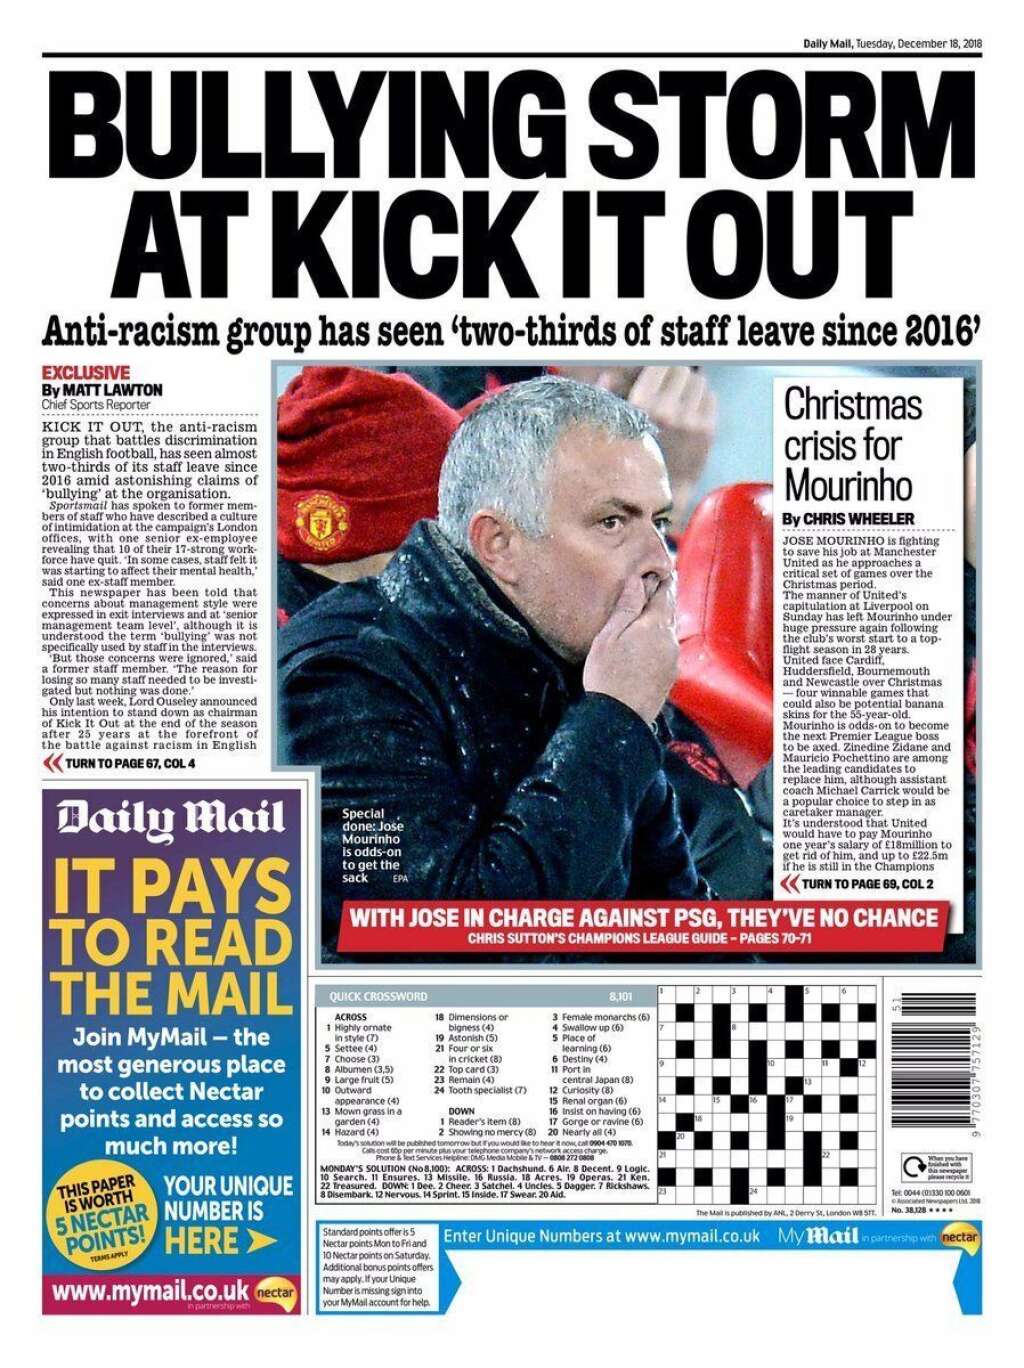 18 décembre - "Daily Mail" - "Avec José aux commandes contre le PSG, ils [Manchester United] n'ont aucune chance", affirmait en décembre le spécialiste football du <em>Daily Mail</em>.